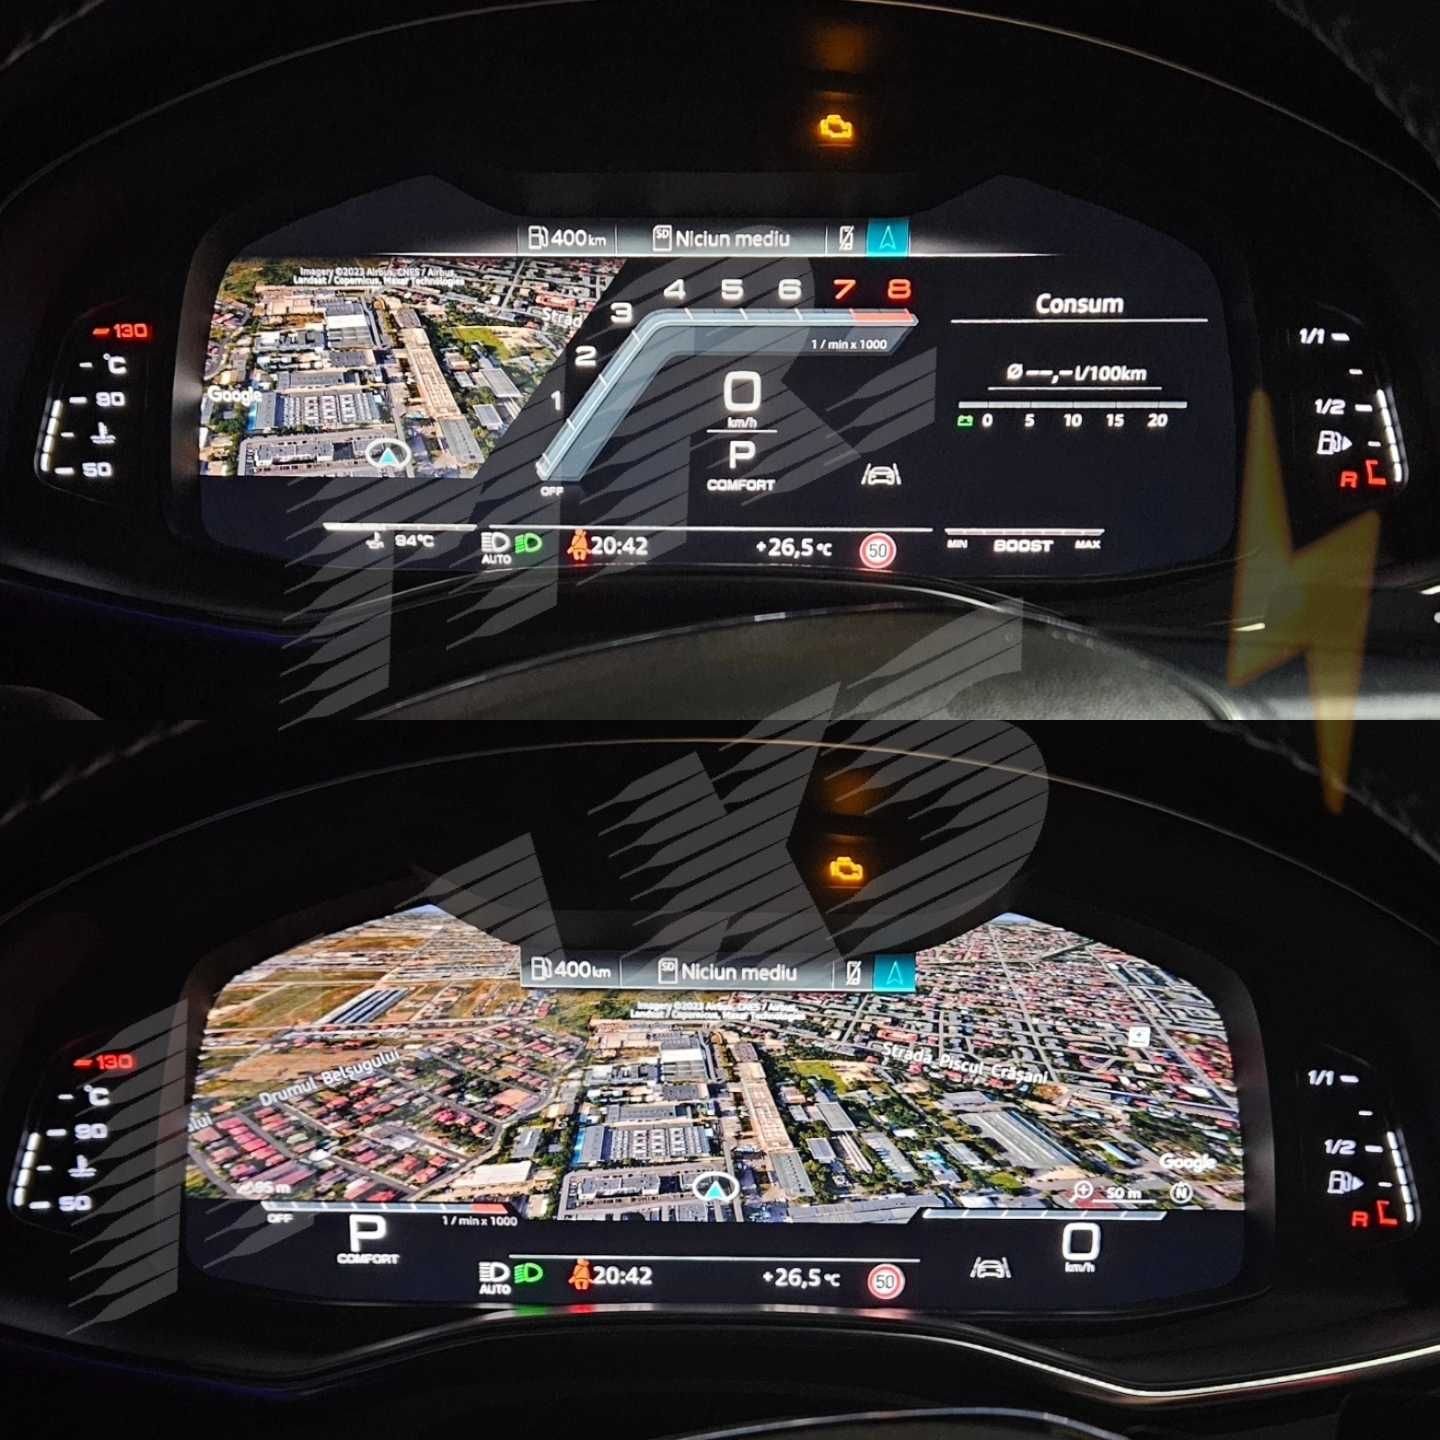 Activare afisaj sport layout Virtual Cockpit Audi TT A3 A4 A5 Q2 Q5 Q7